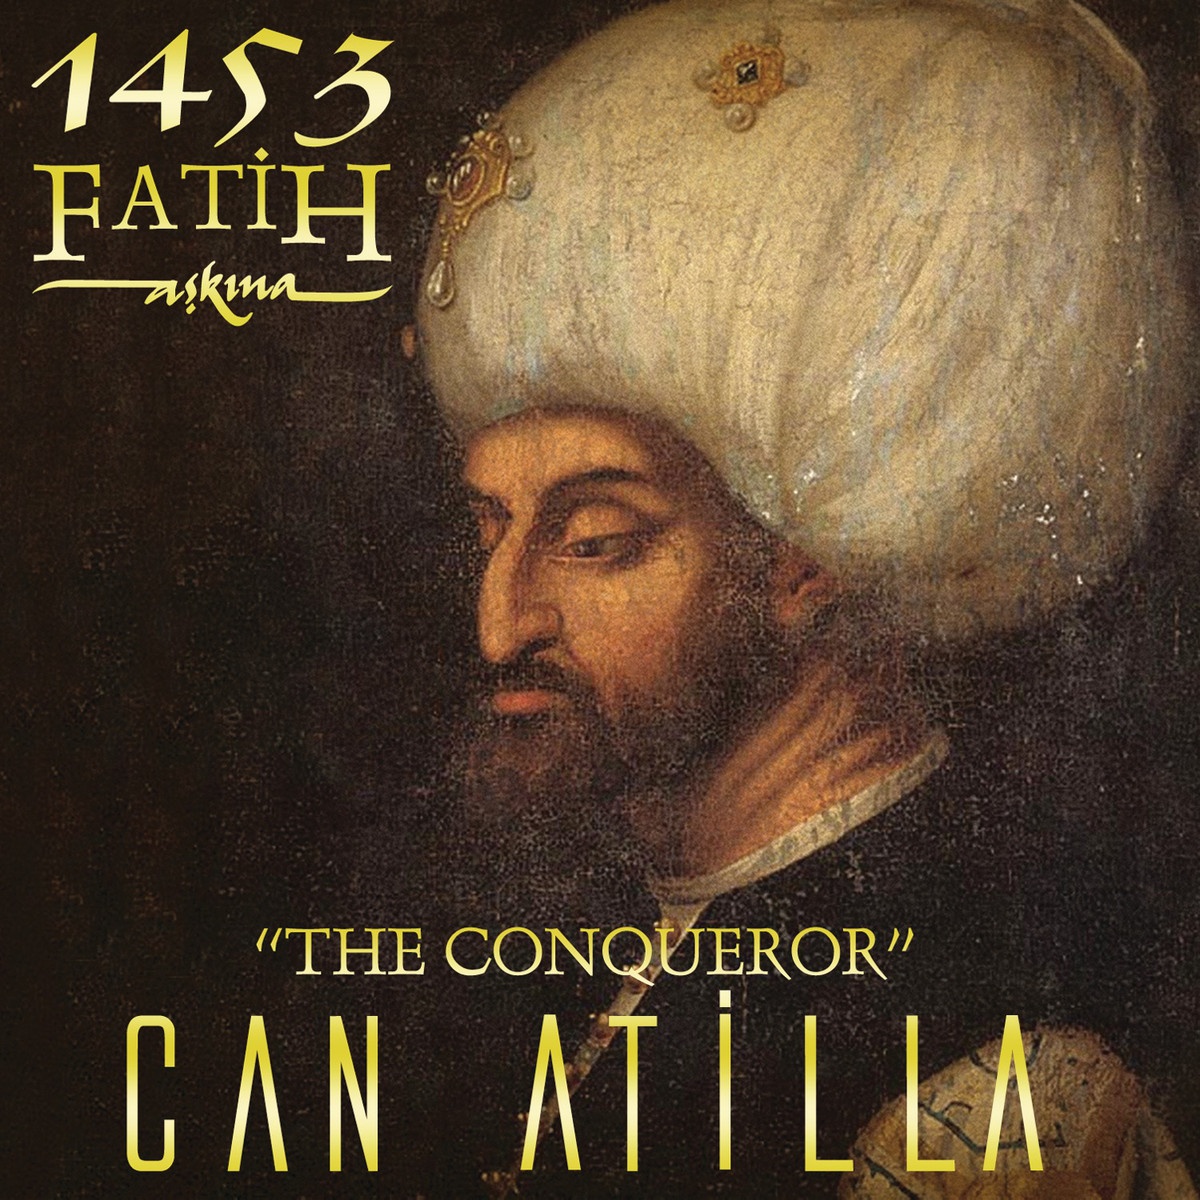 1453 Fatih Askina